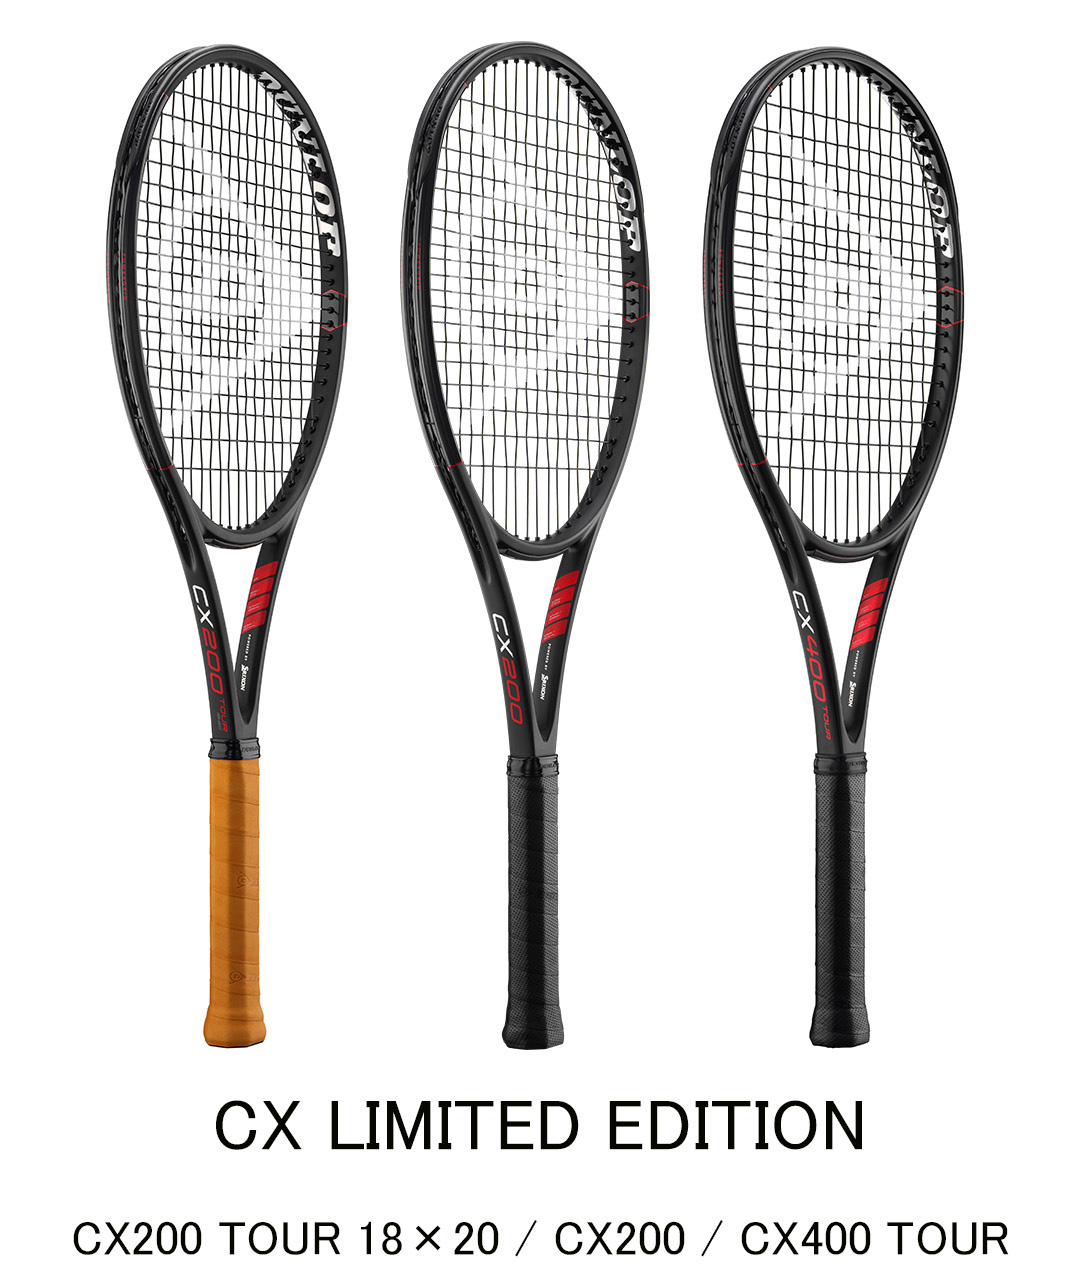 ダンロップテニスラケット「CX LIMITED EDITION」を数量限定で新発売